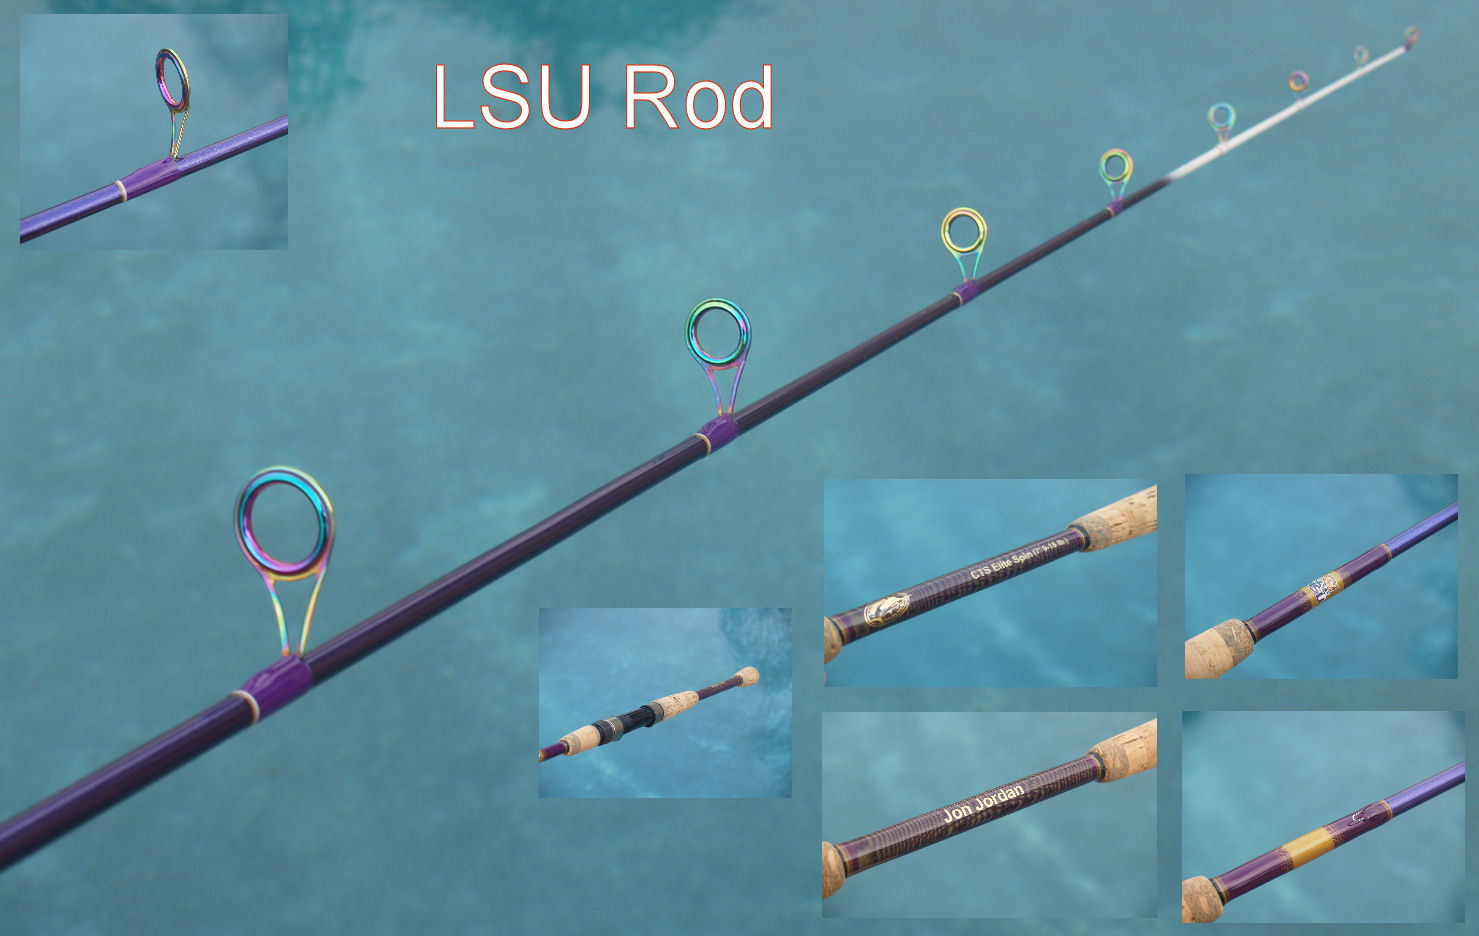 LSU theme rod